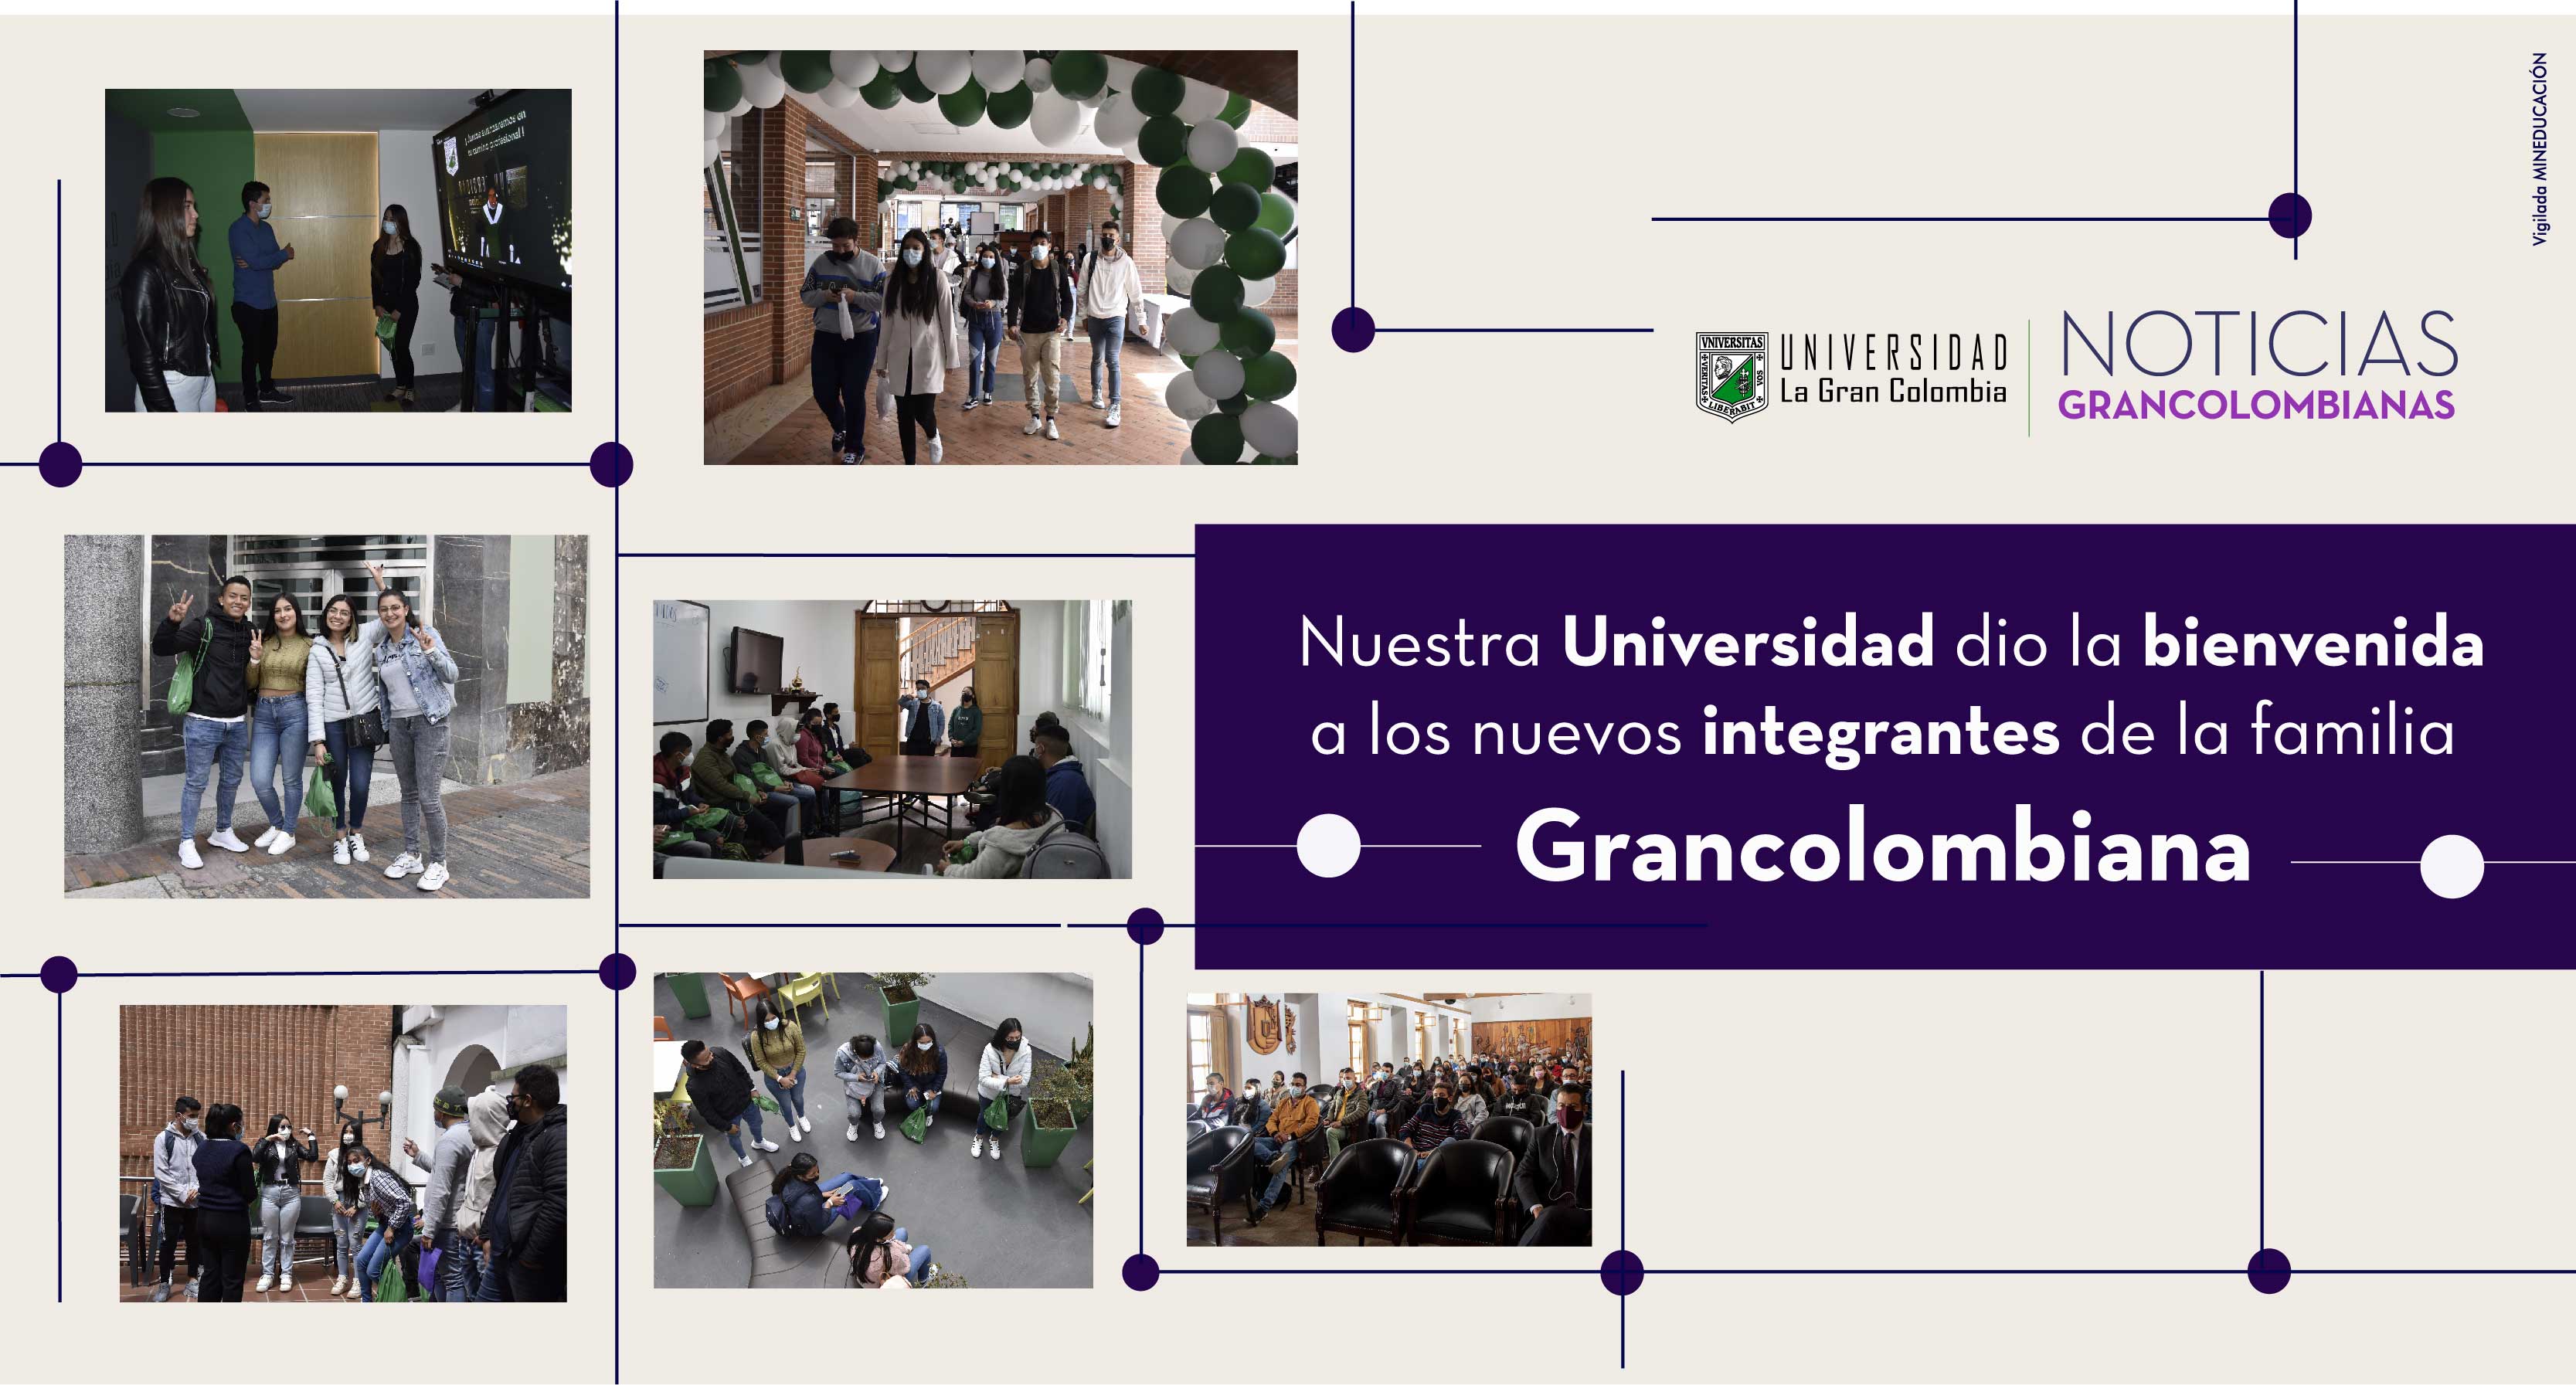 Nuestra Universidad dio la bienvenida a los nuevos integrantes de la familia grancolombiana